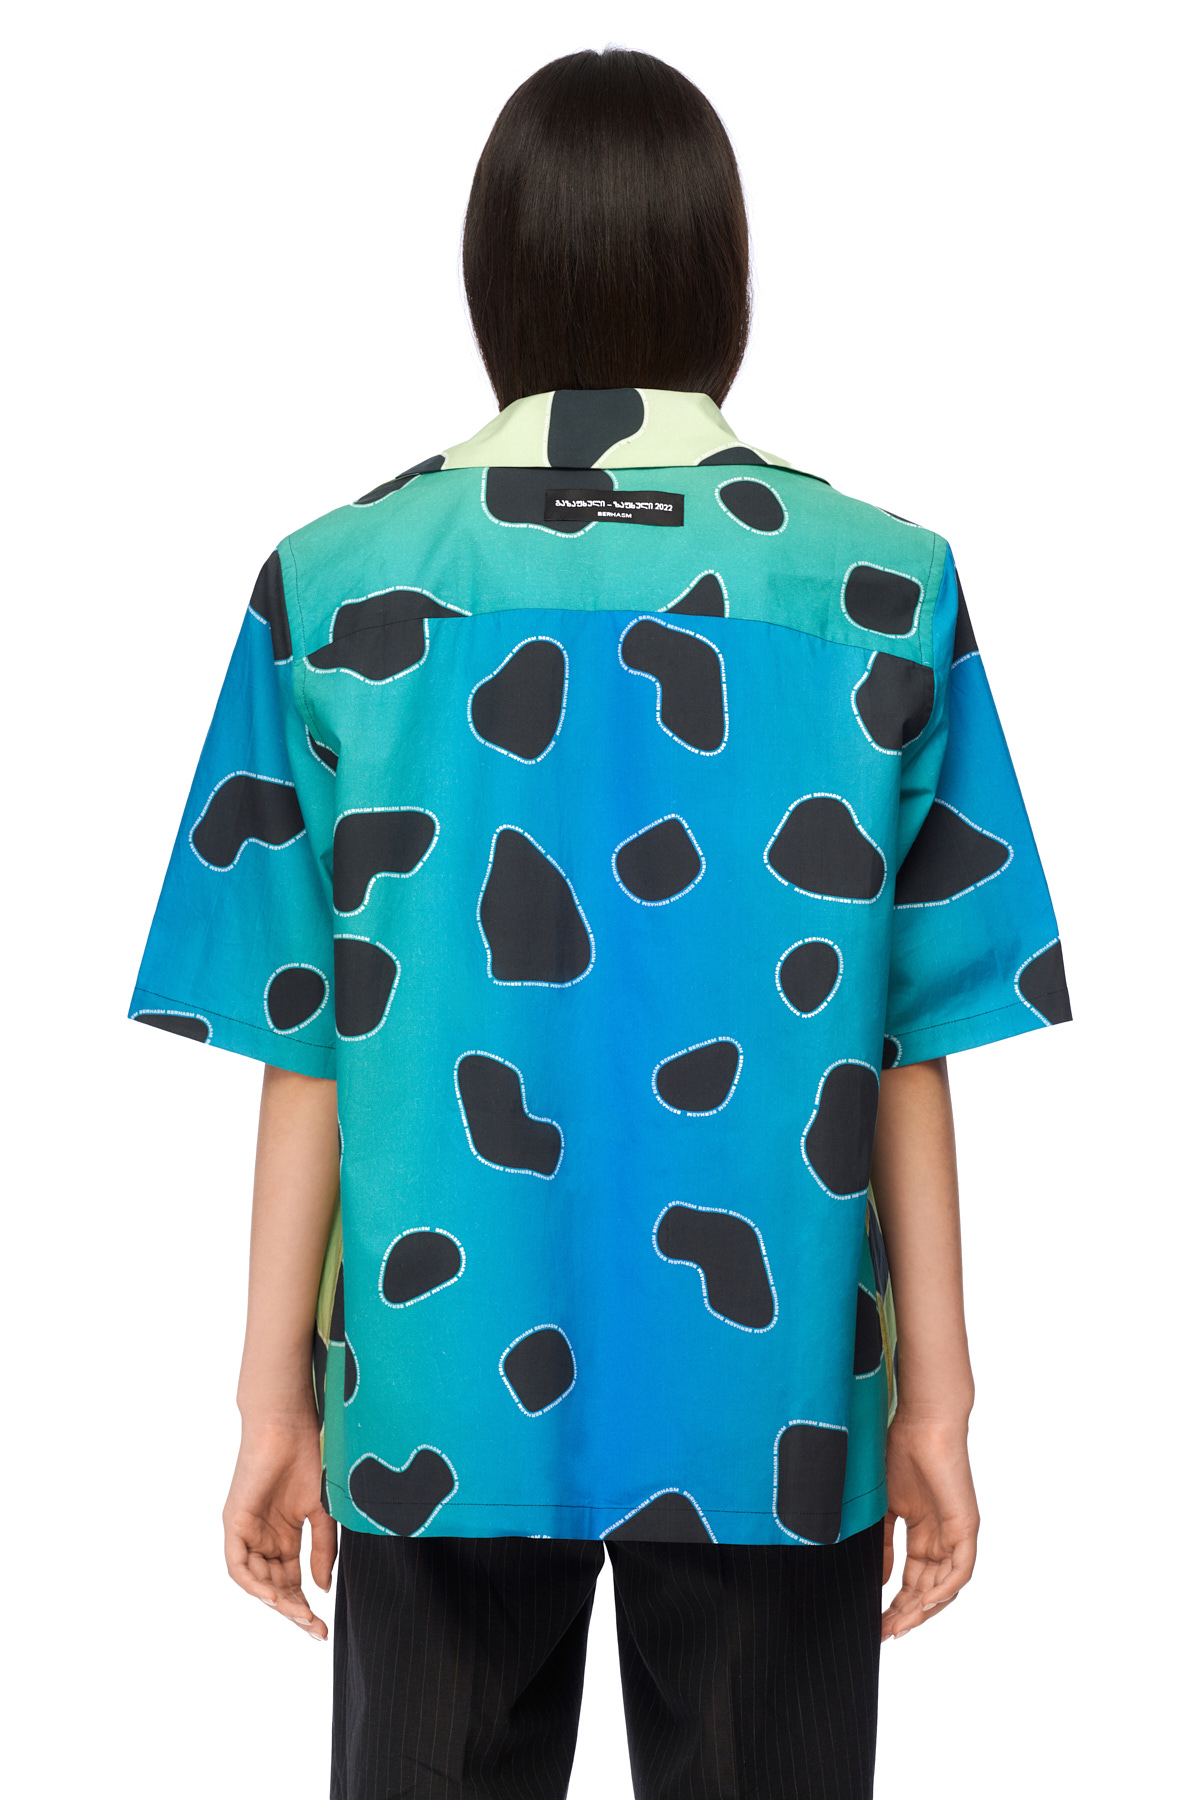 Leopard print shirt